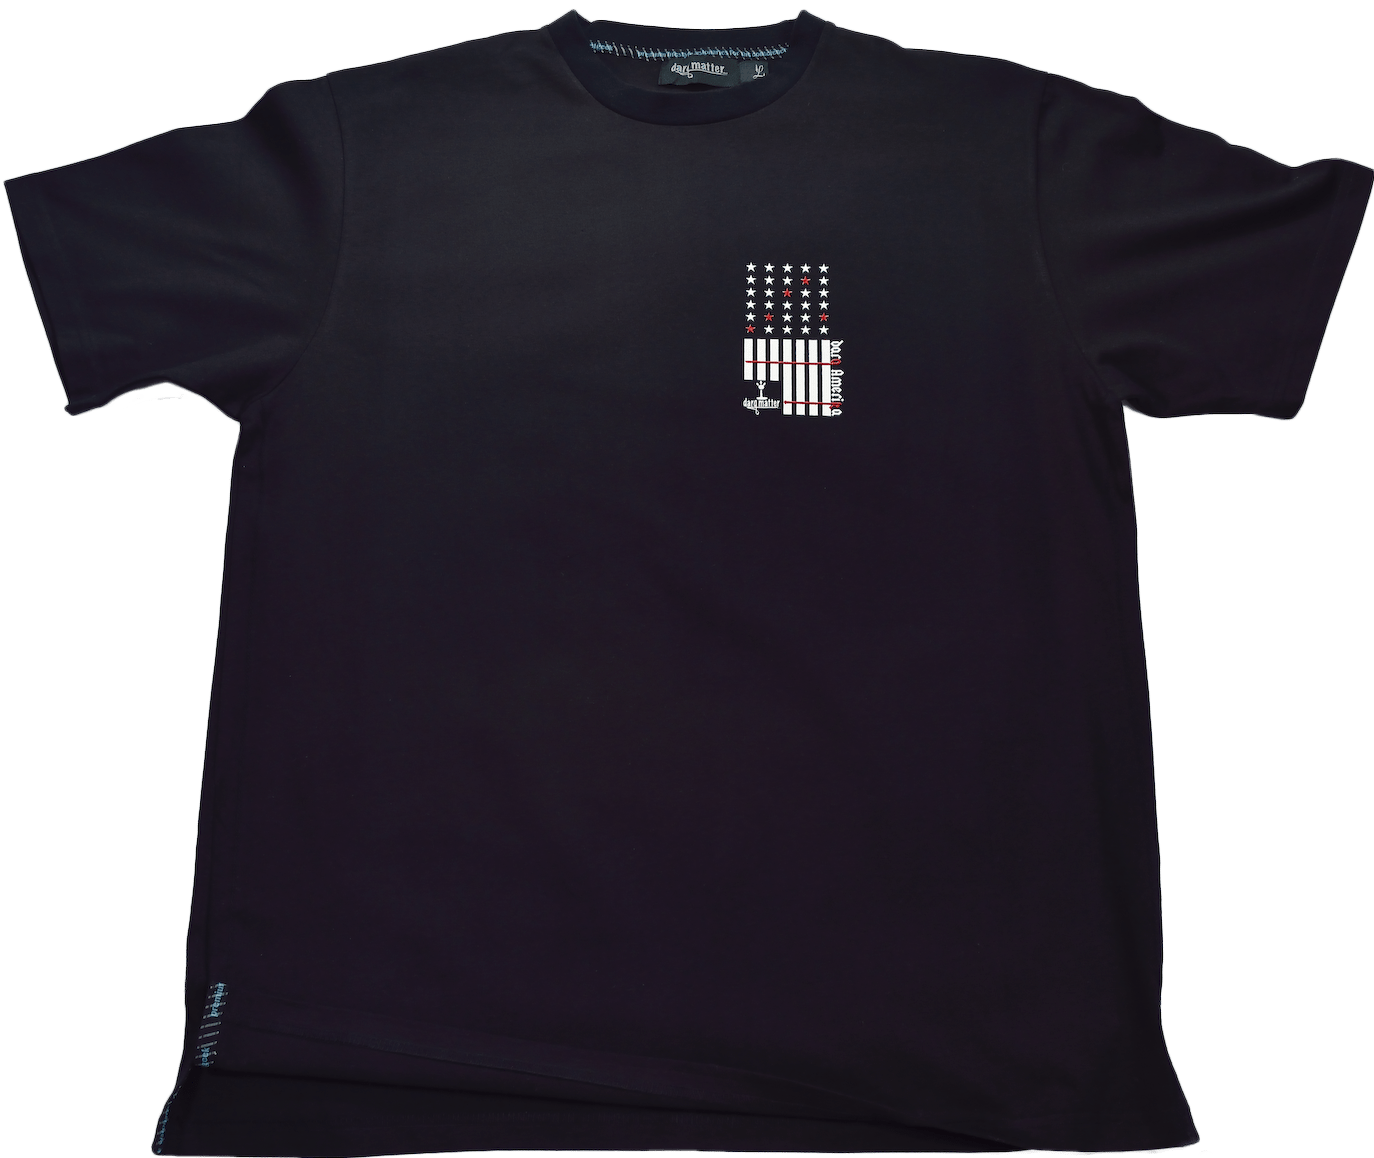 DarqMatterDesign CutnSew T-Shirts Small / Black Darq Amerika